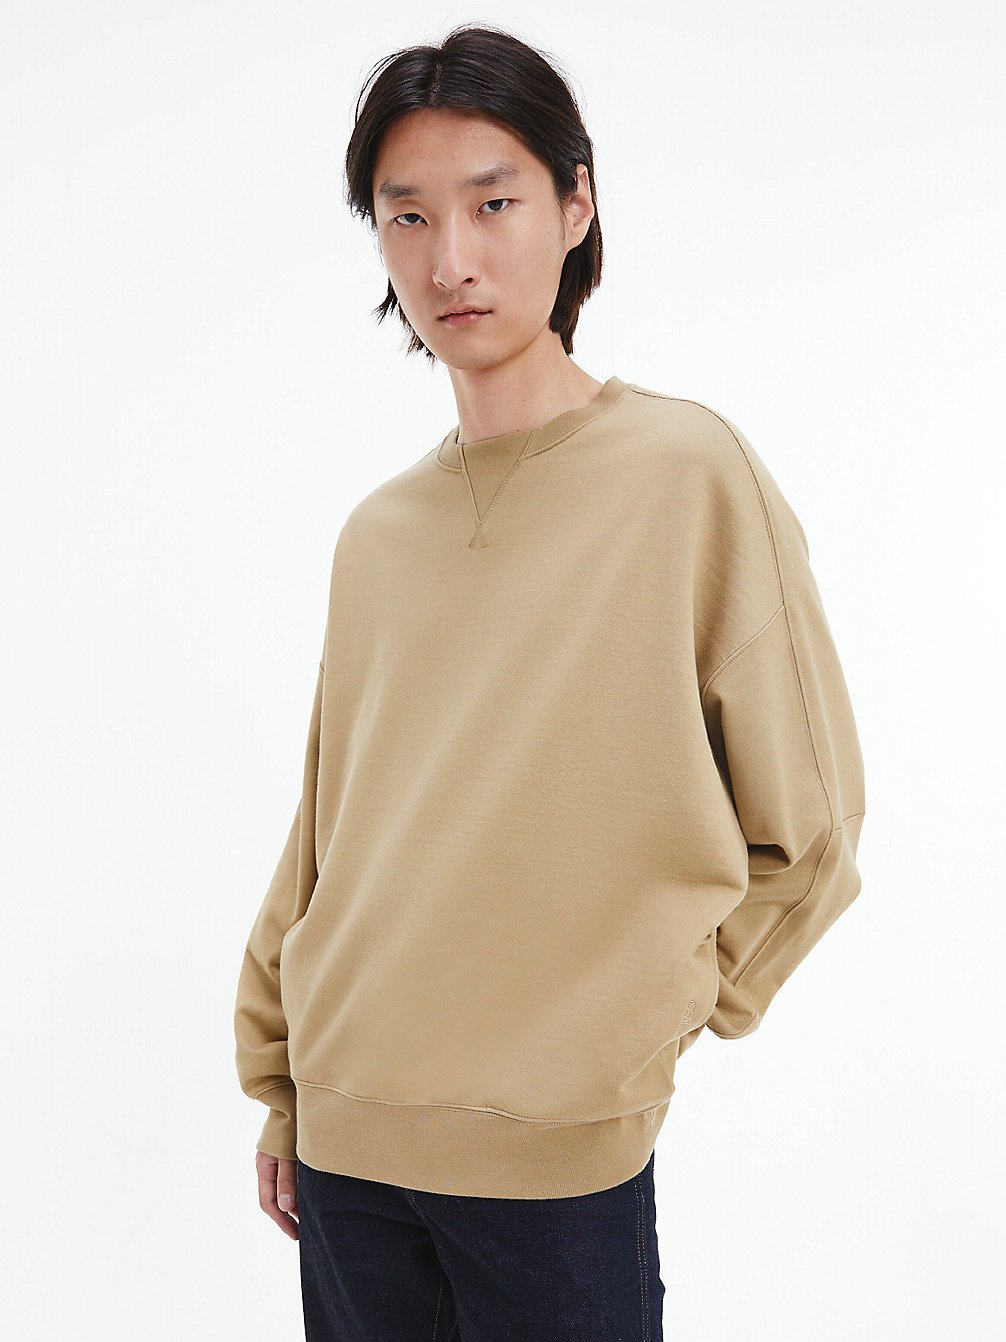 NETTLE > Lässiges Unisex-Sweatshirt – CK Standards > undefined unisex - Calvin Klein